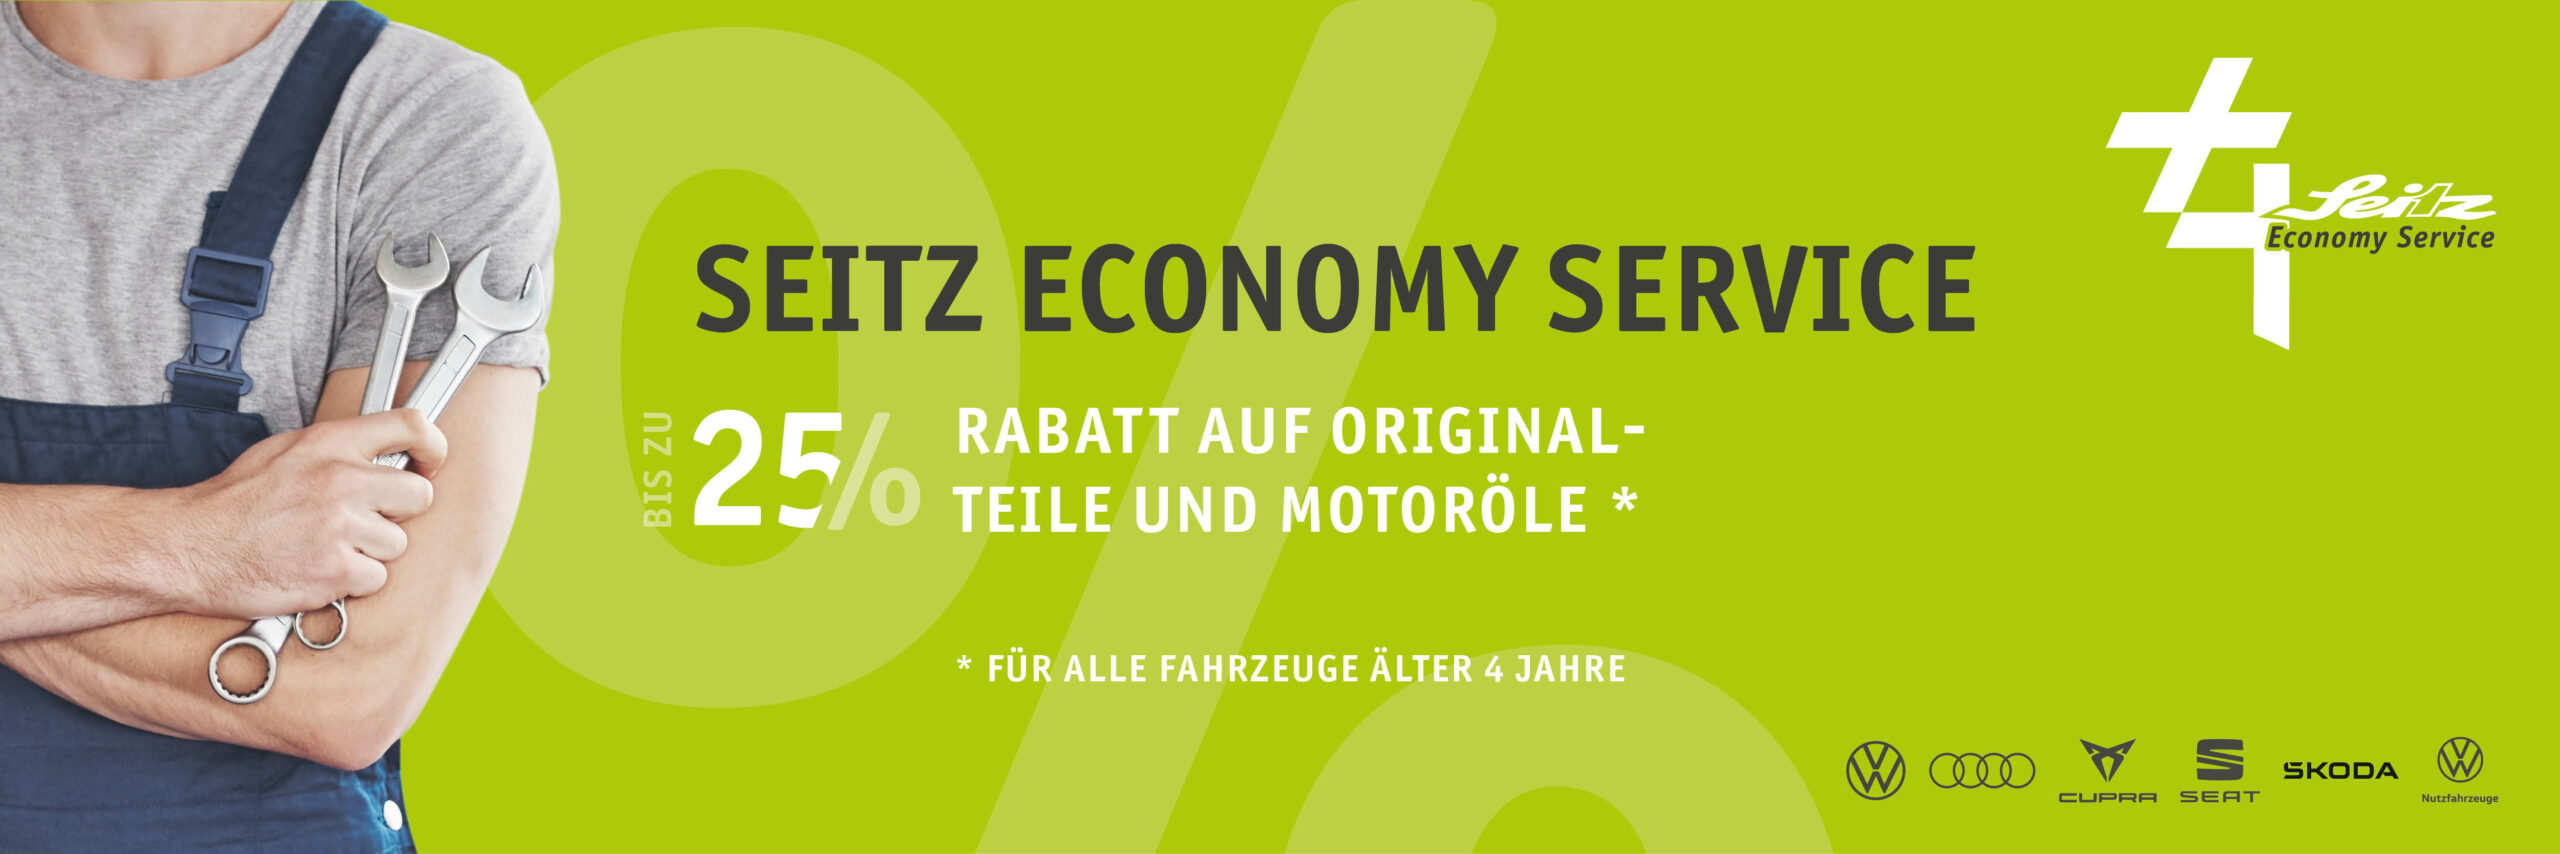 Seitz Economy Service